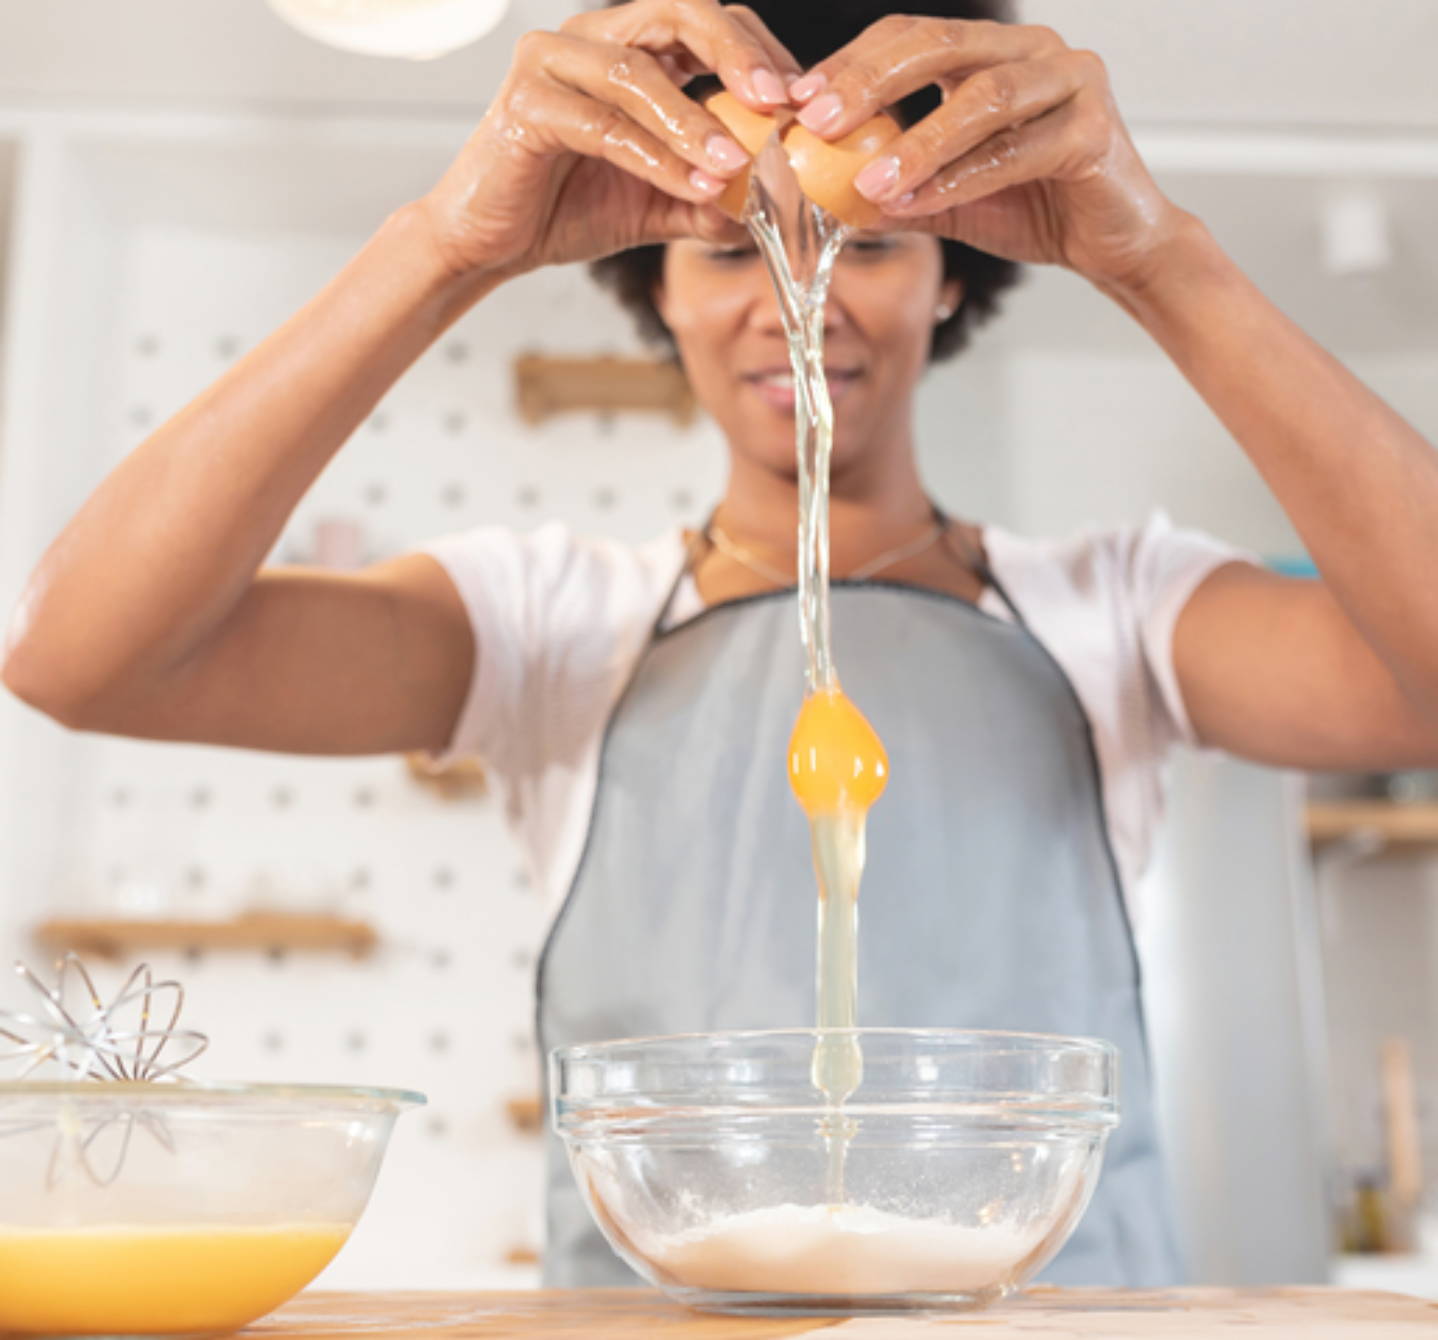 Frau teilt ein Ei hoch über einer Schüssel, sodass Eiweiß und Eigelb in das Mehl fließen – Eier können Allergien verursachen